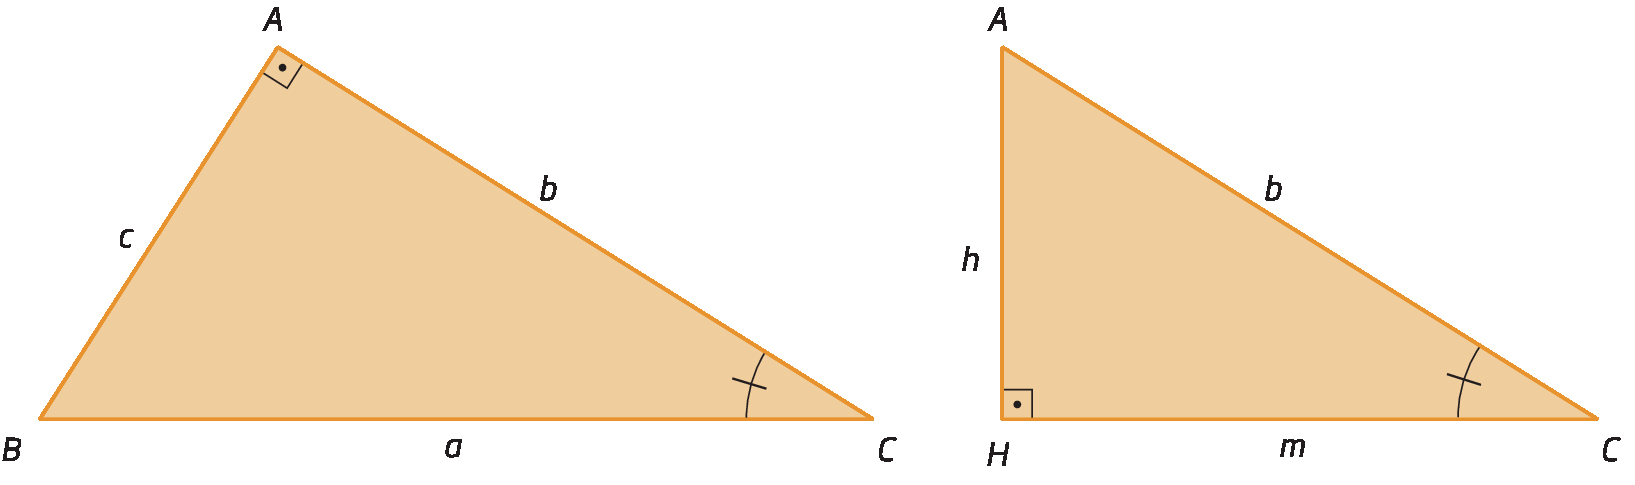 Esquema. À esquerda, o triângulo retângulo ABC com o ângulo reto em A. A medida do comprimento do cateto AB está representada por c. A medida do comprimento do cateto AC está representada por b. A medida do comprimento da hipotenusa BC está representada por a. O Ângulo ACB está marcado com um arco e um traço.
À direita, triângulo retângulo HAC, com o ângulo reto em H. A medida do comprimento do cateto AH está representada por h. A medida do comprimento do cateto CH, está representada por m. A medida do comprimento da hipotenusa AC está representada por b. O ângulo ACH está marcado com um arco e um traço.